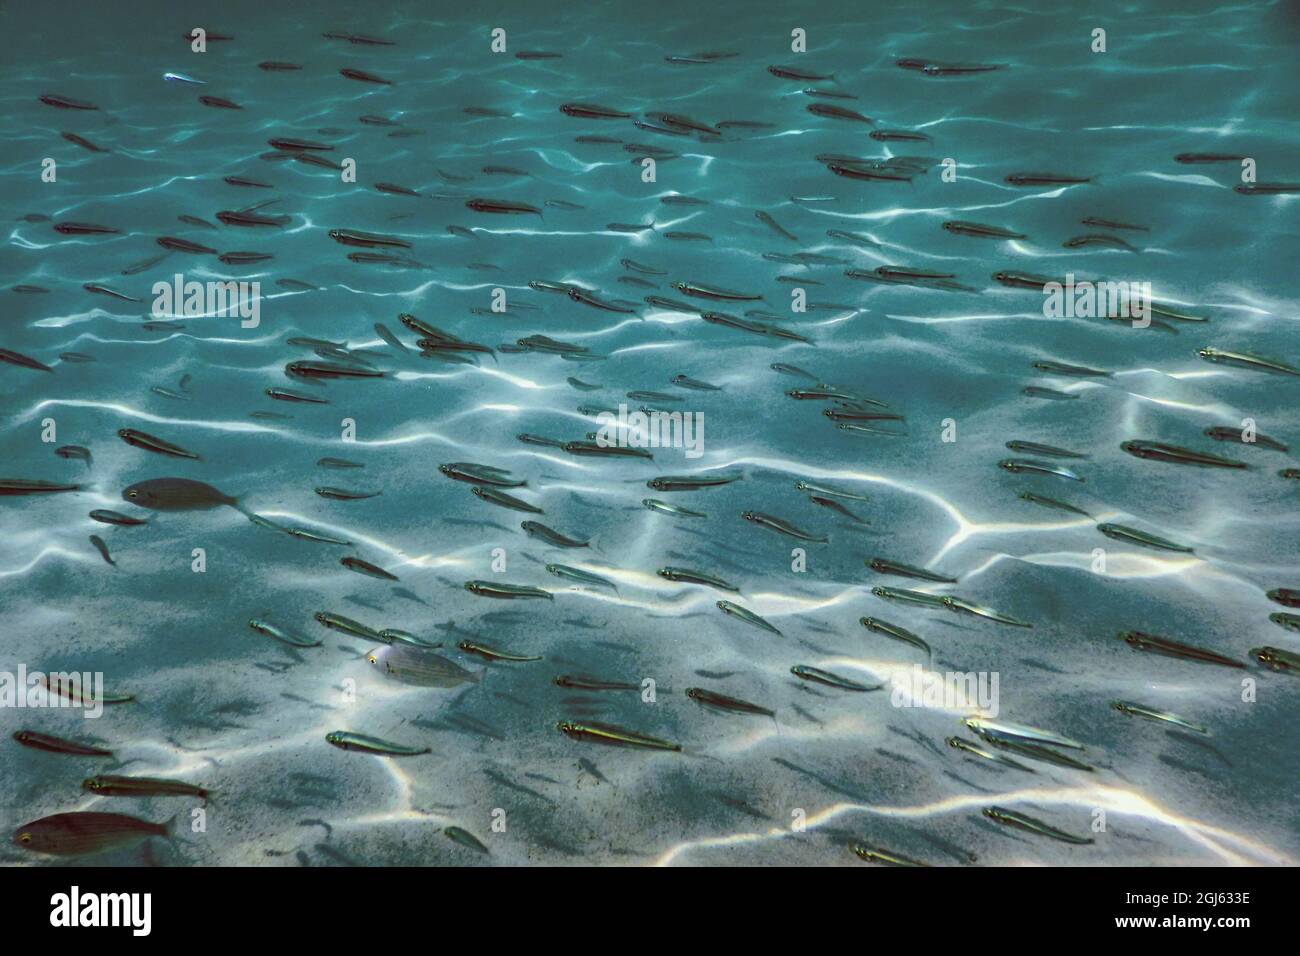 Sandy bottom, fish swimming underwater Stock Photo